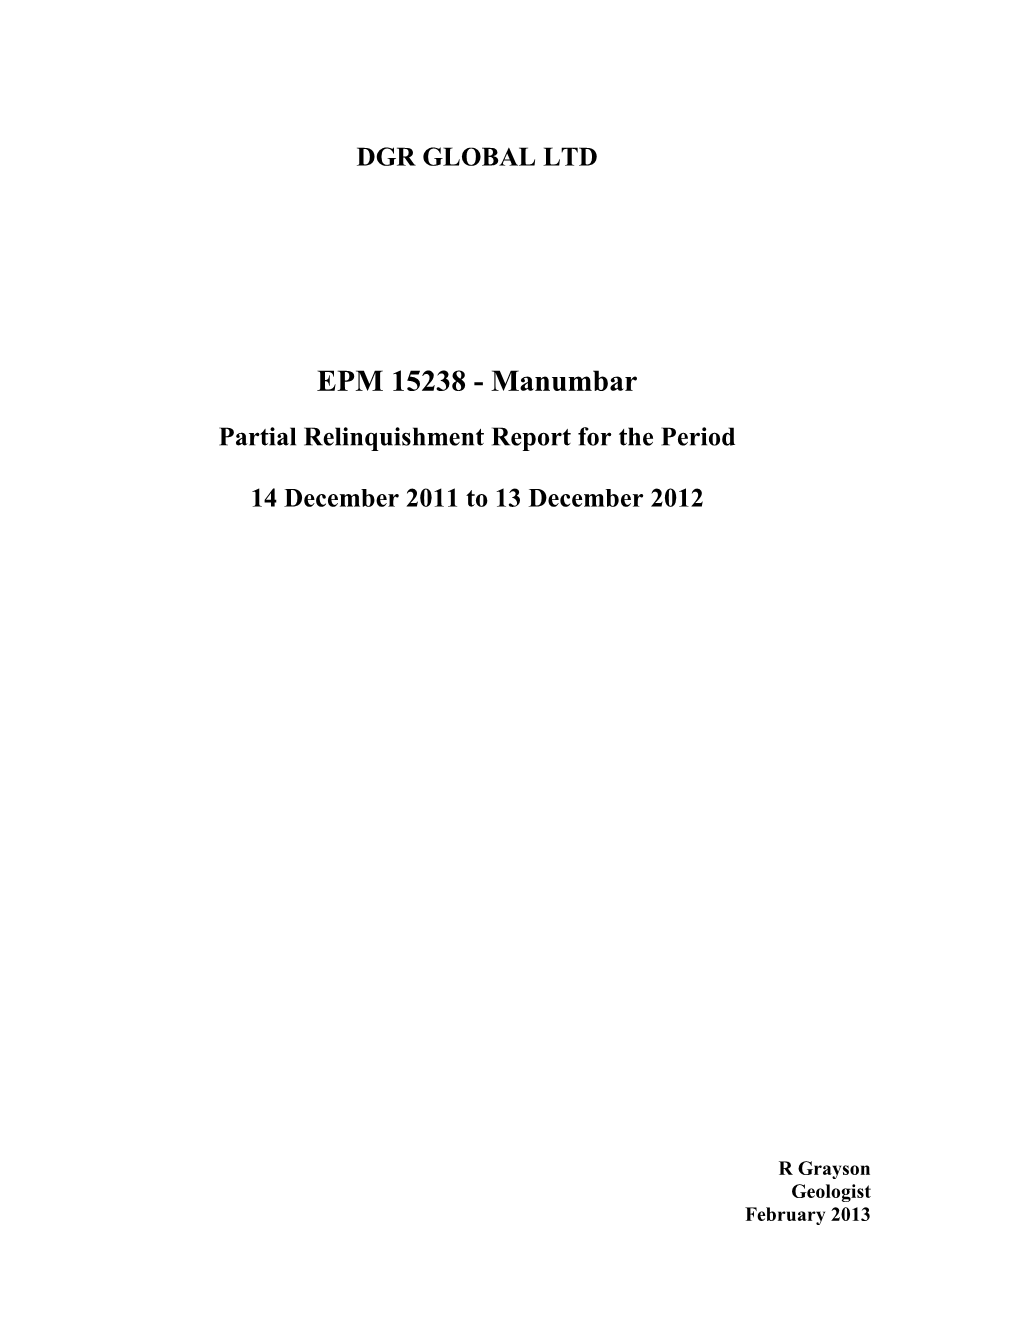 EPM 15238 - Manumbar